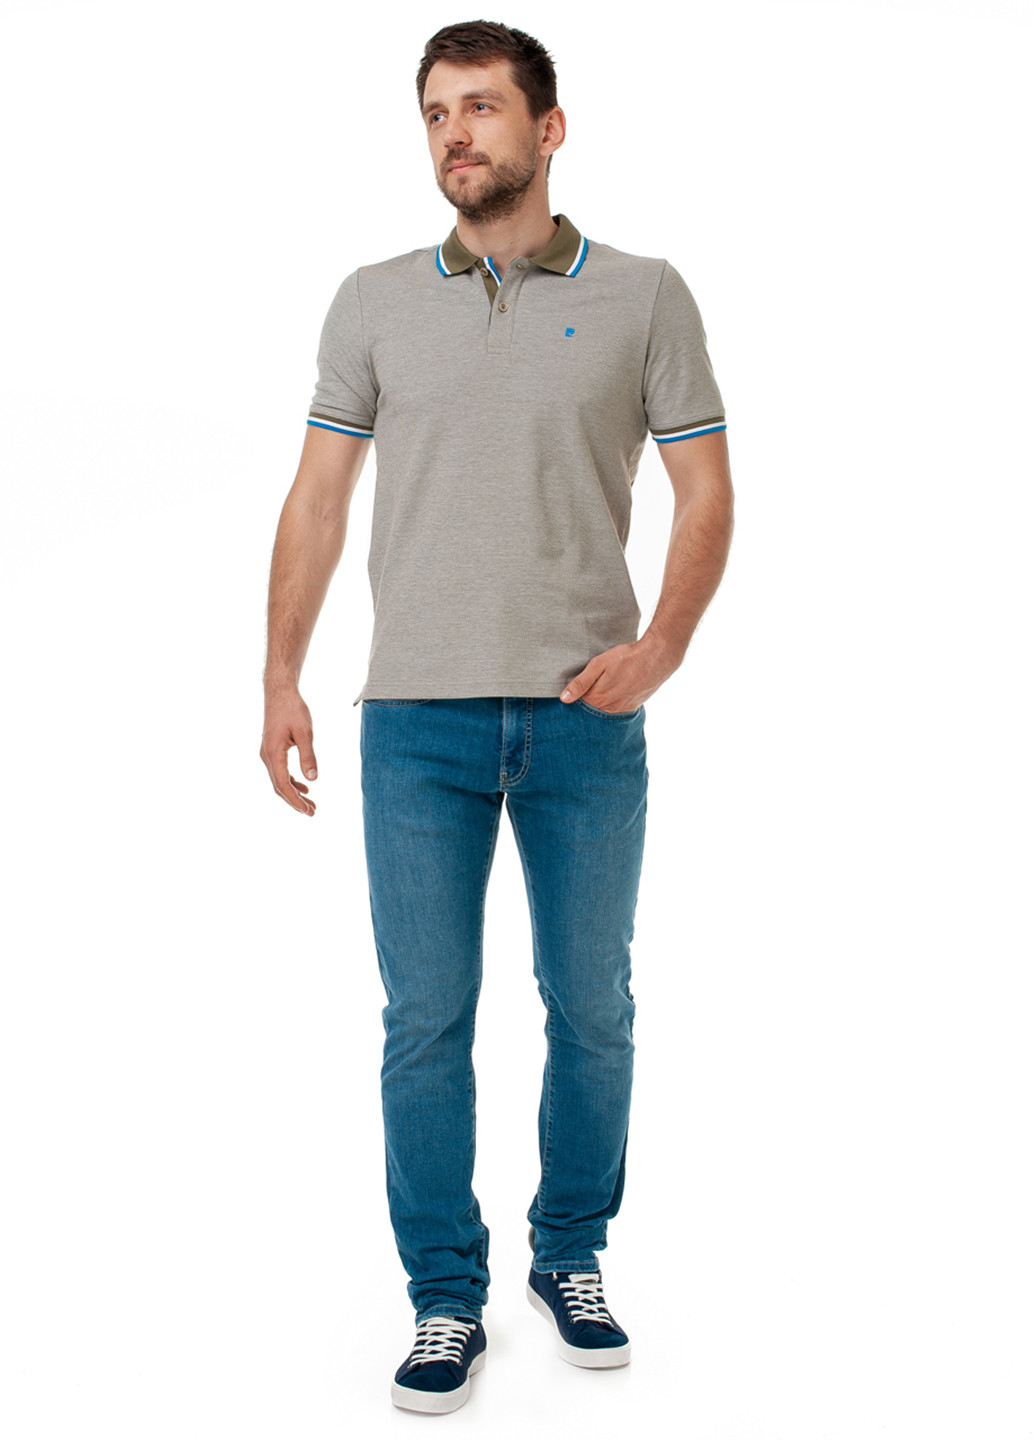 Оливковая (хаки) футболка-поло для мужчин Pierre Cardin однотонная